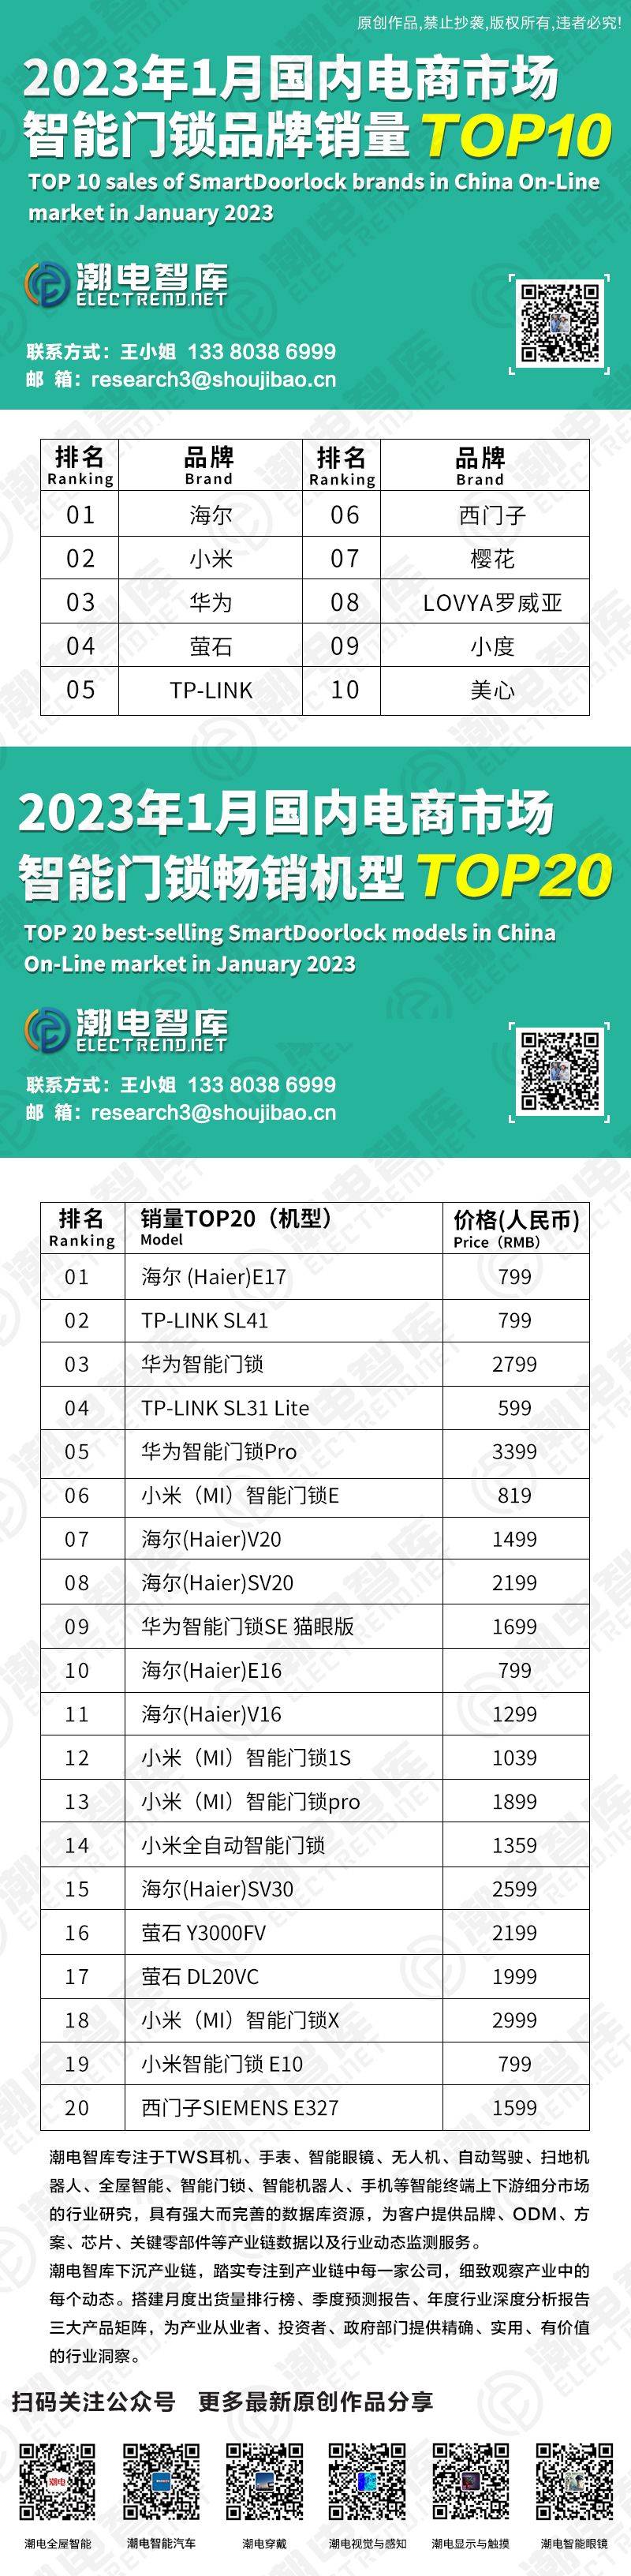 599元华为新款手机
:2023年1月国内电商市场智能门锁品牌销量TOP 10